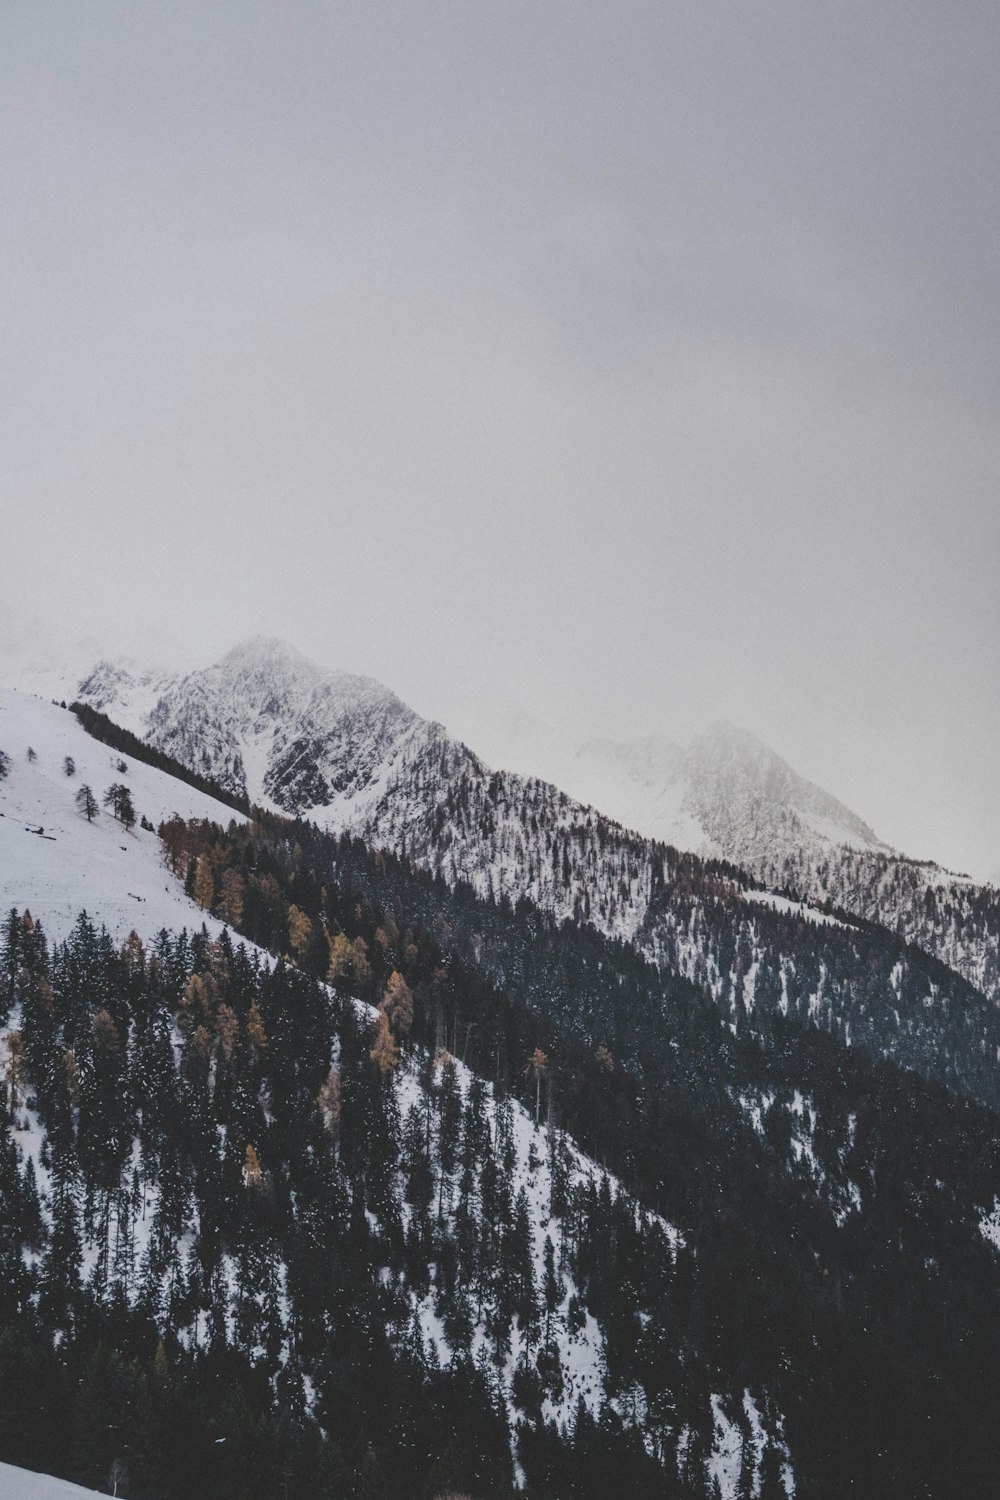 Berg mit Schnee und Bäumen bedeckt